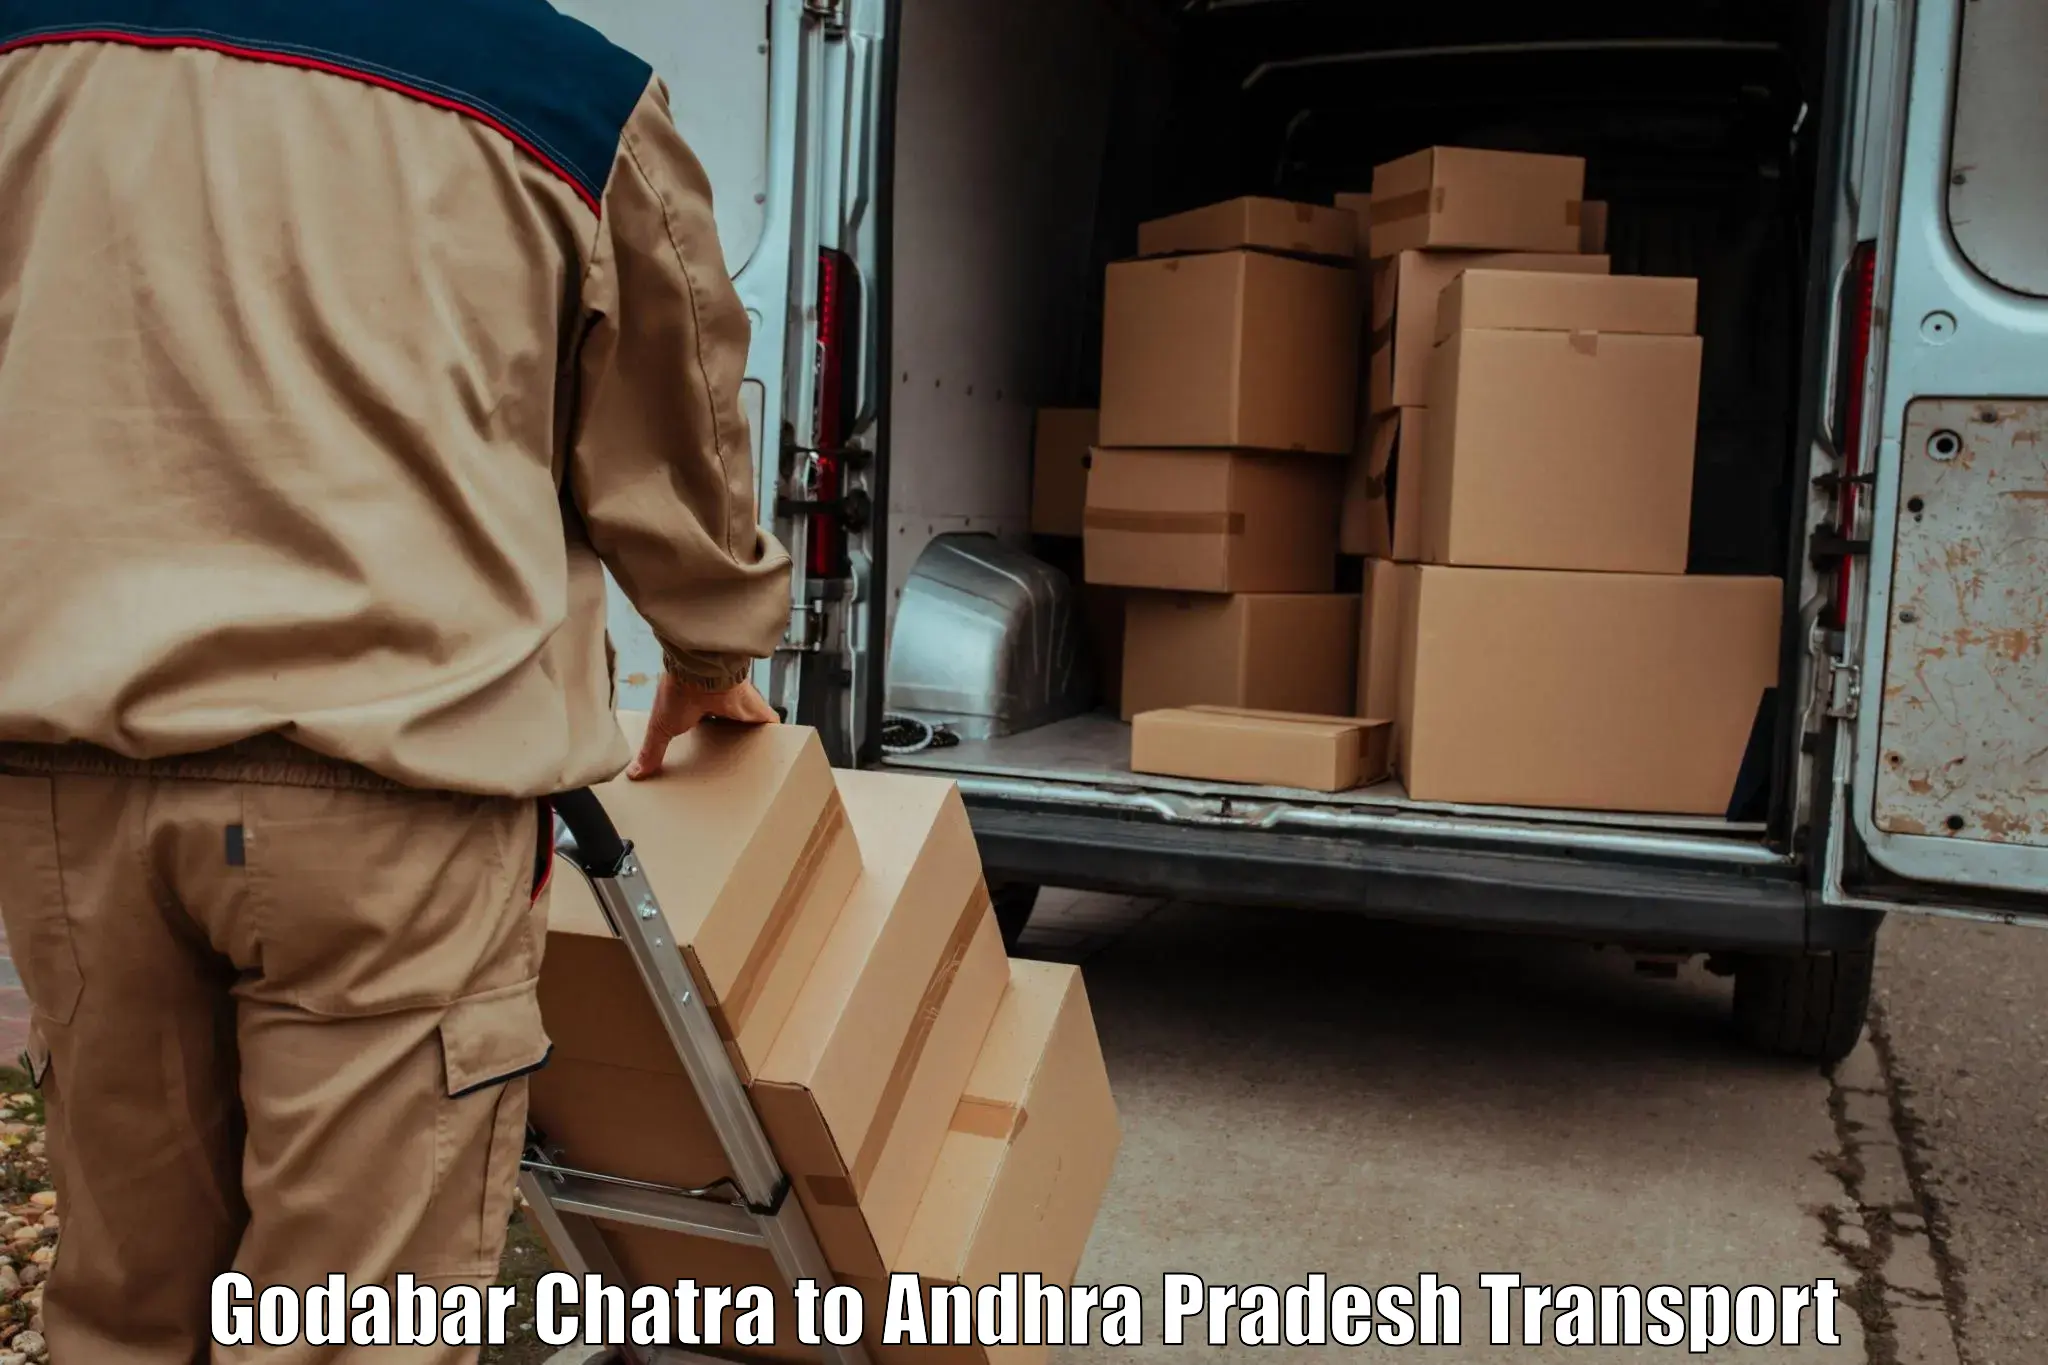 Air freight transport services Godabar Chatra to Vizianagaram